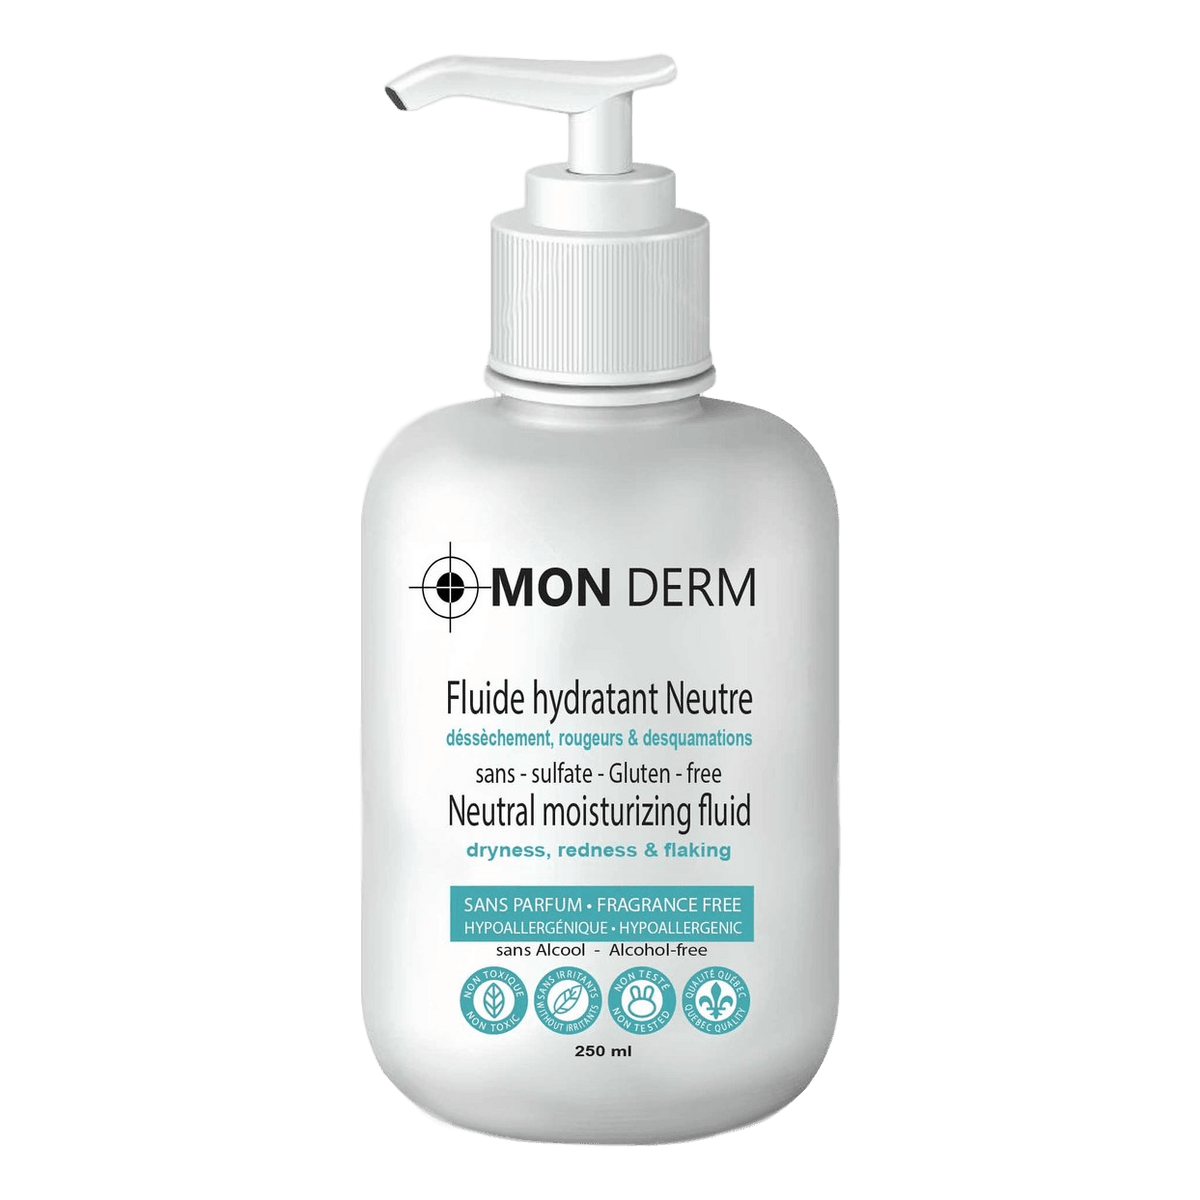 MON DERM | Fluide hydratant neutre inconfort & démangeaisons pour visage et corps - GOM-MEE